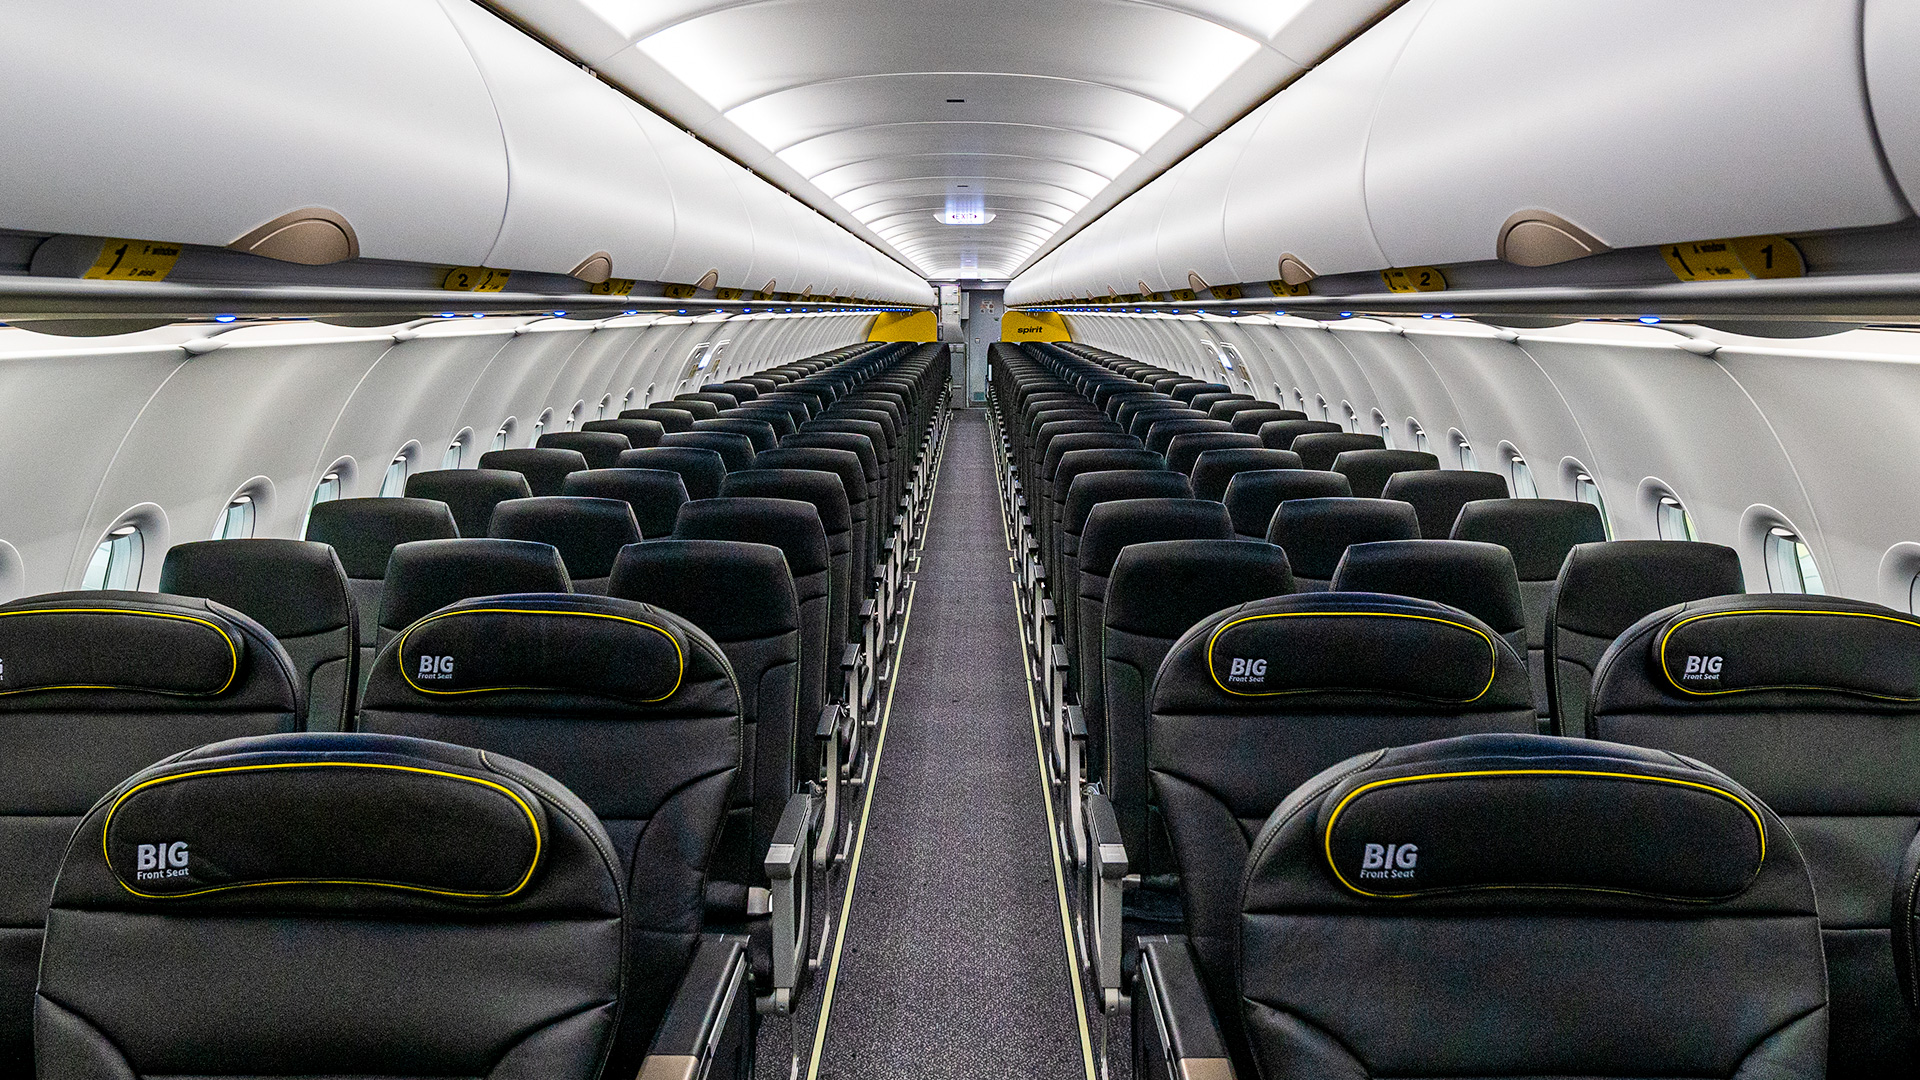 https://www.smartertravel.com/wp-content/uploads/2020/02/spirit-airlines-big-front-seats-hero.jpg